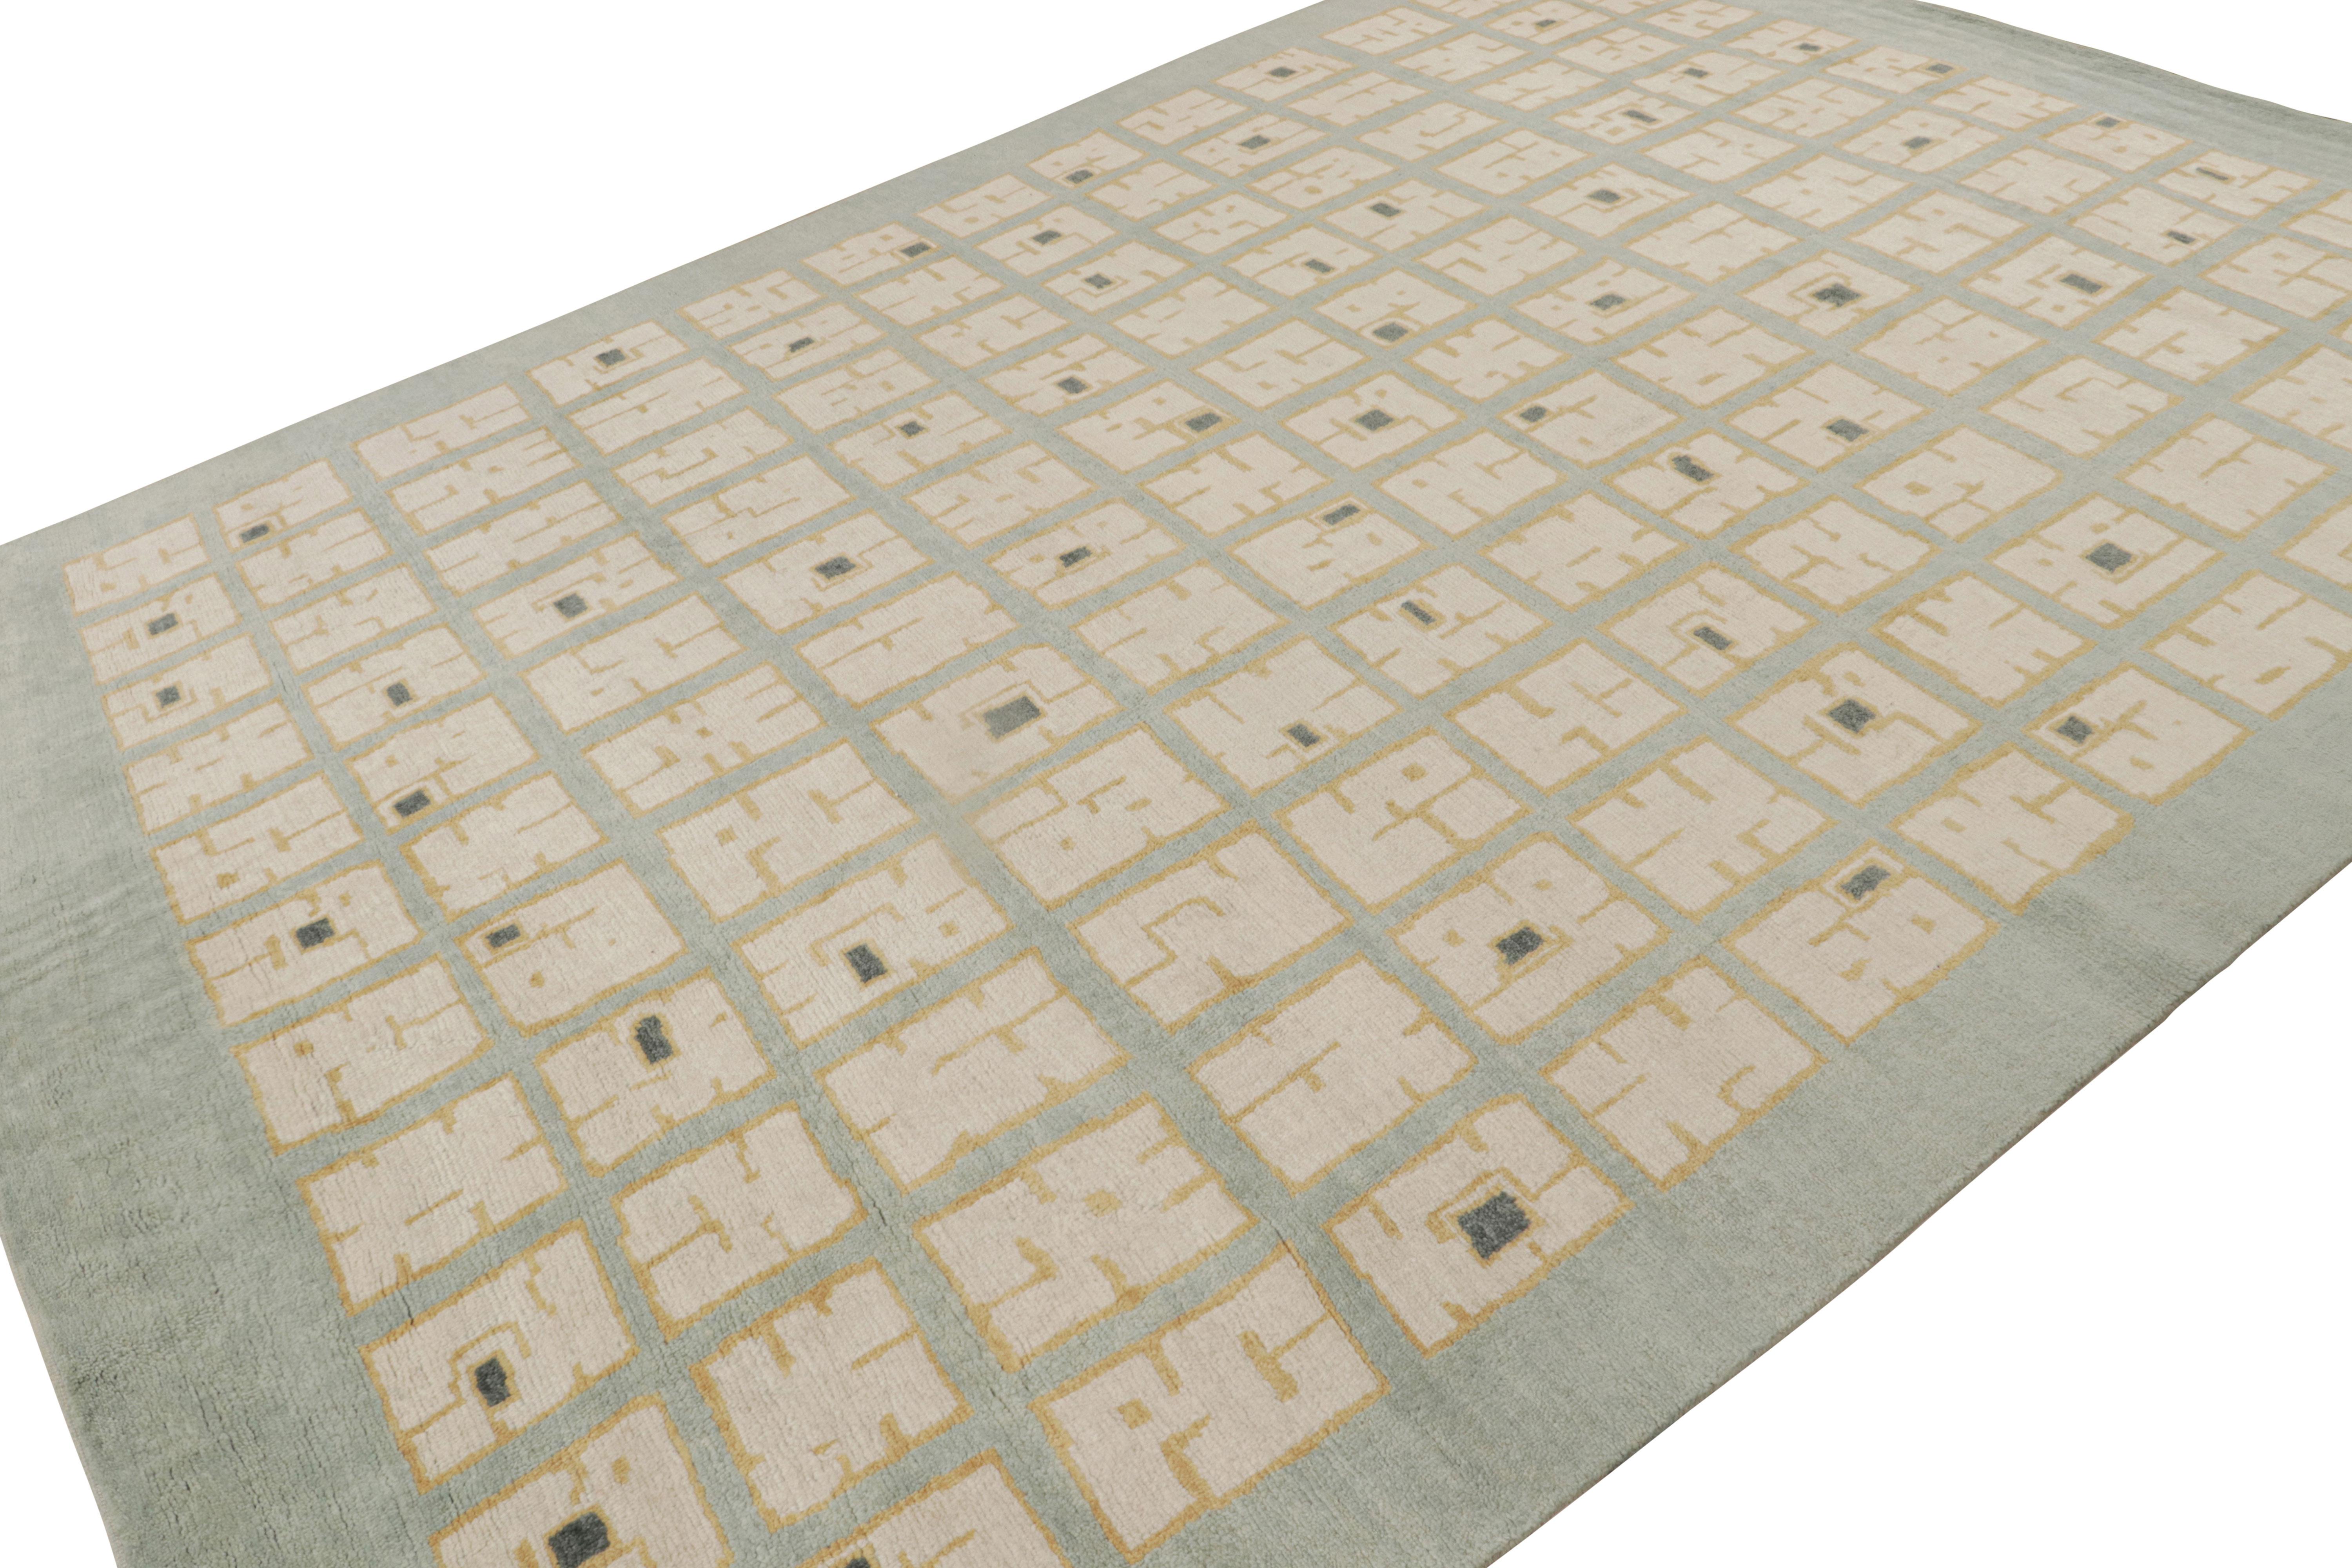 Noué à la main en laine, ce tapis moderne 9x12 de Rug & Kilim est un nouvel ajout à la ligne de tapis Art déco français. Son design s'inspire des sensibilités de By Design/One du style moderne des années 1920.  

Sur le Design : 

Les connaisseurs